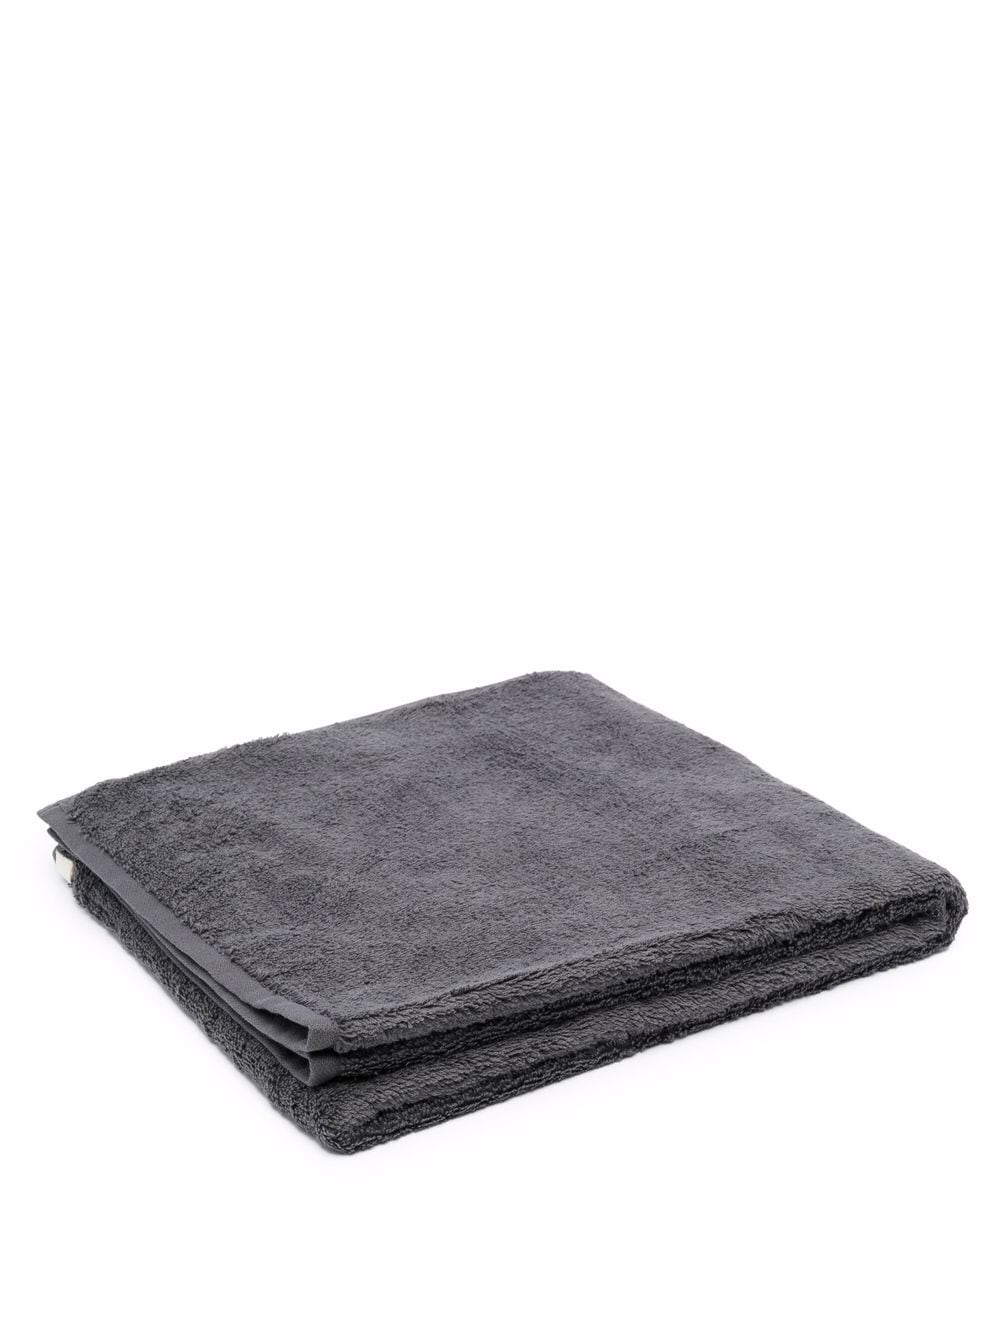 TEKLA organic cotton towel - Grey von TEKLA